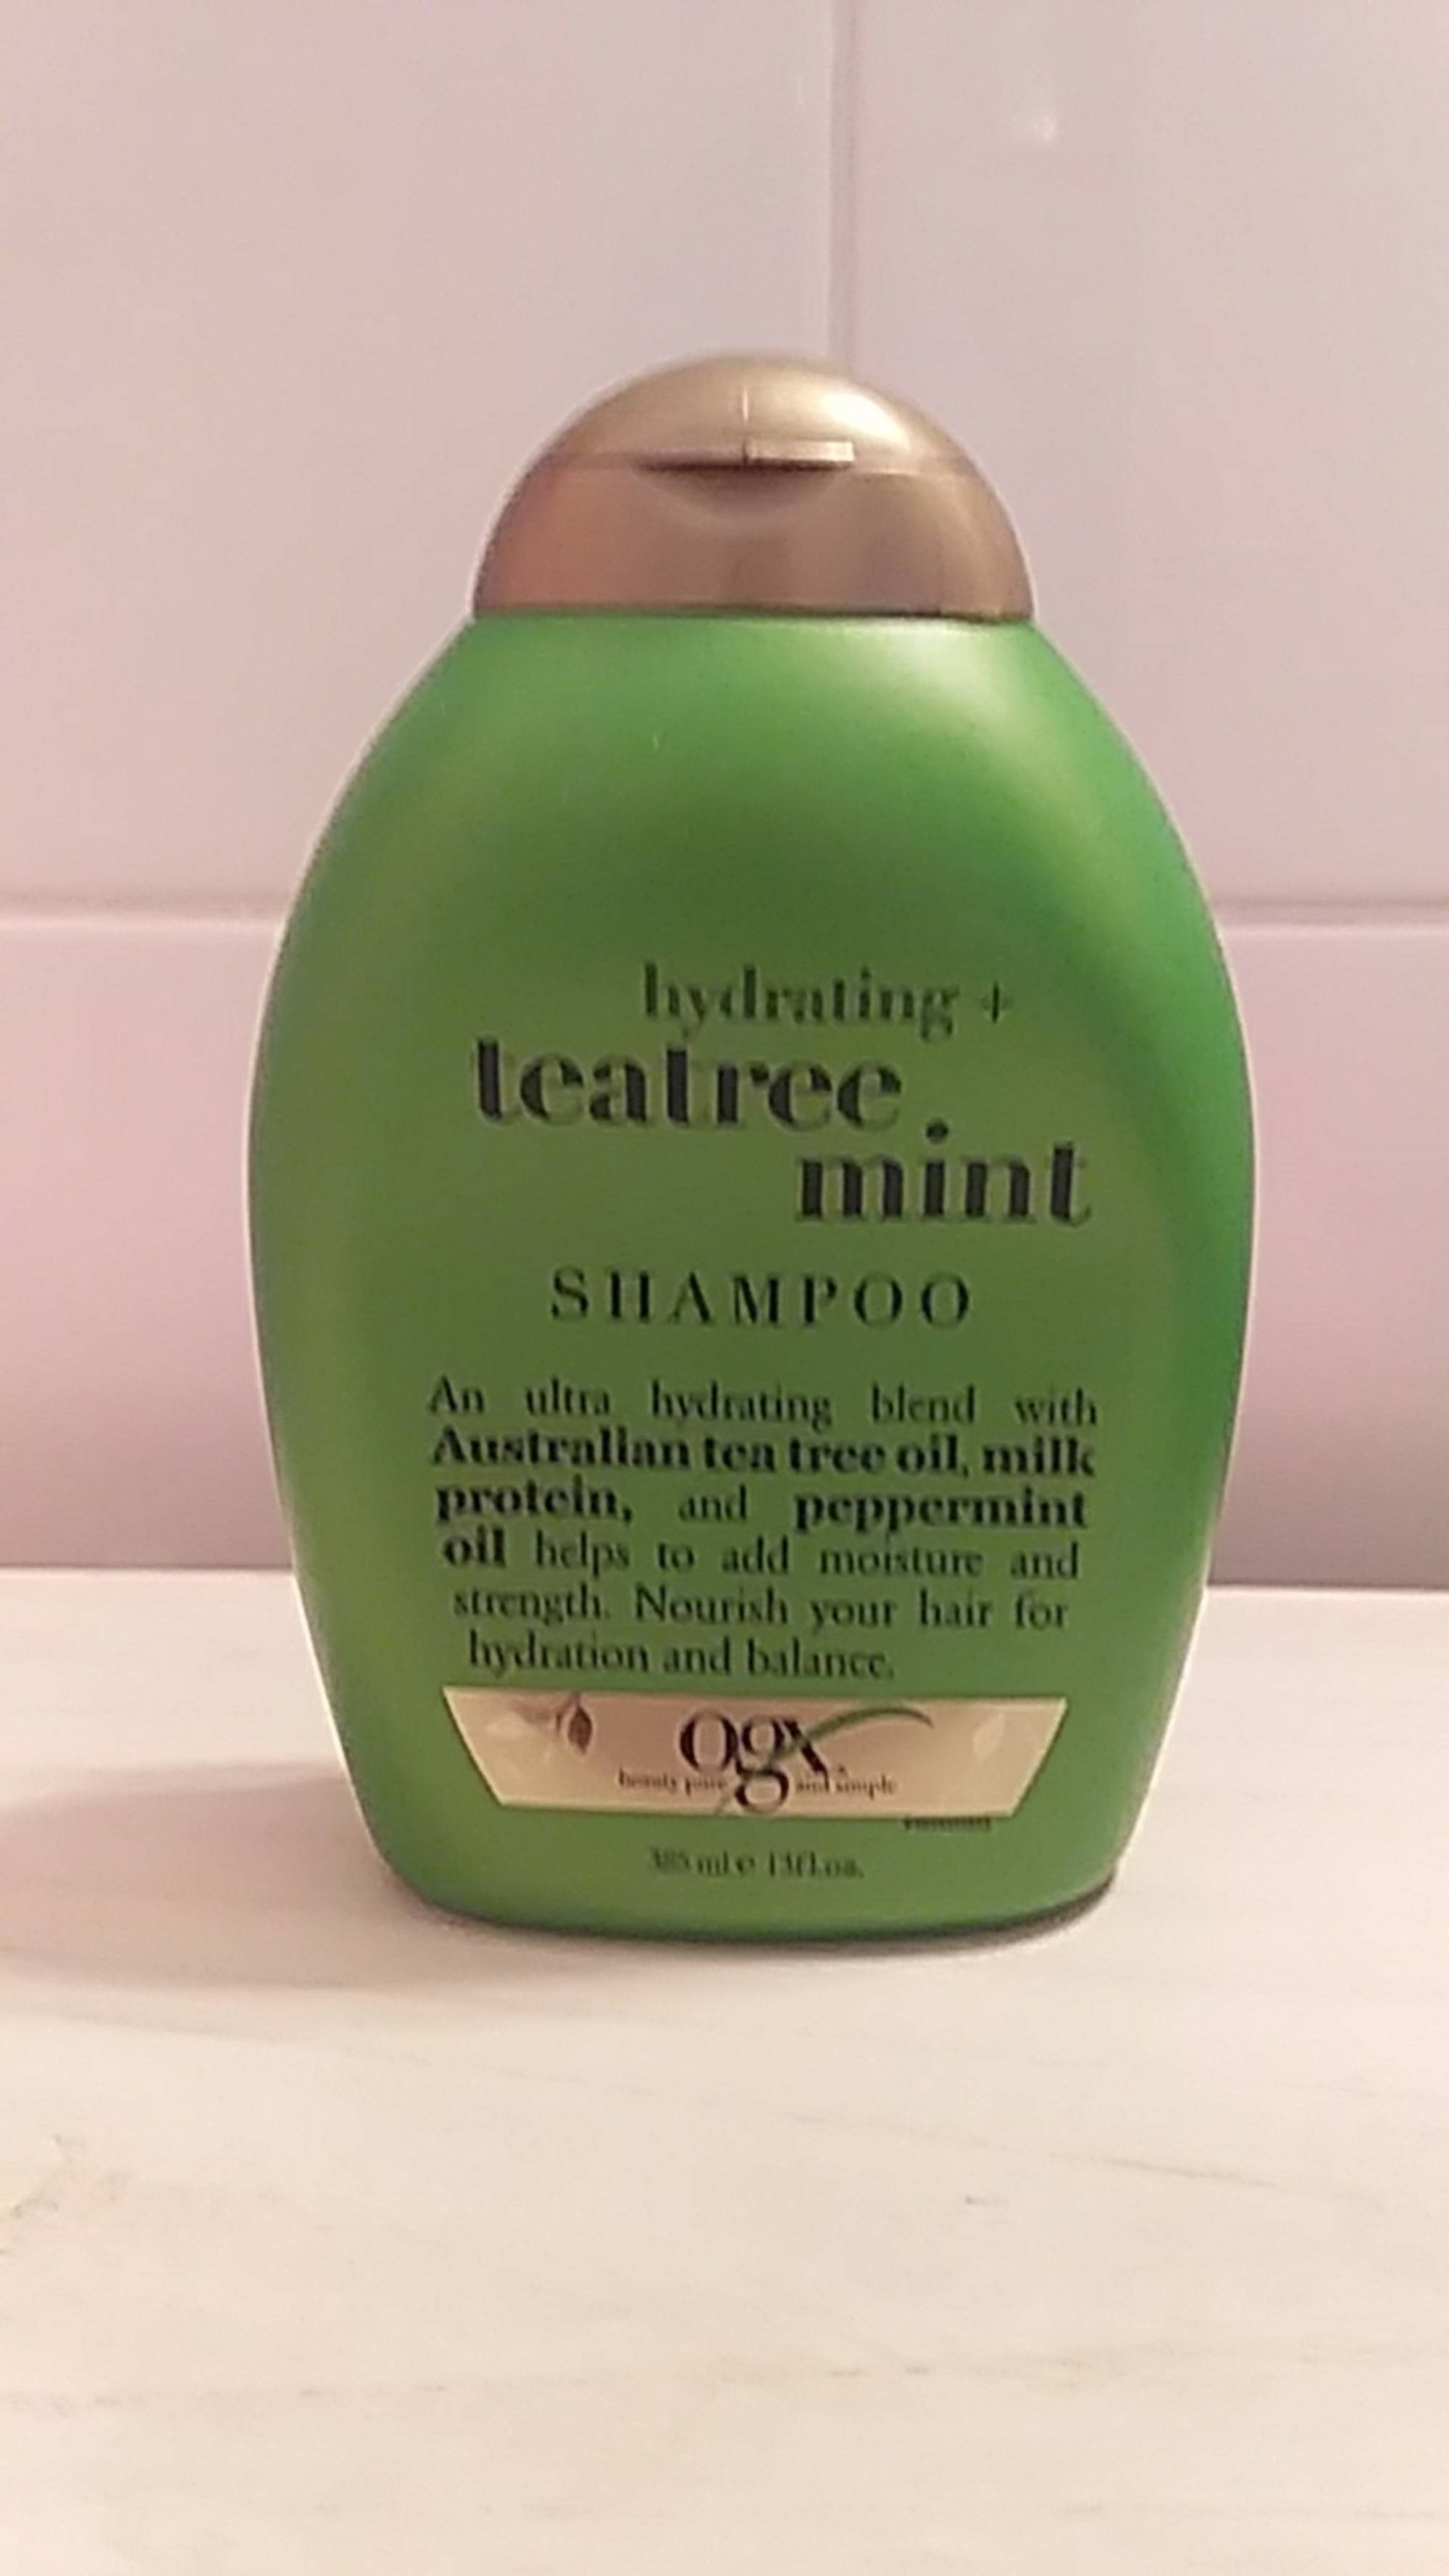 OGX - Hydrating + teatree mint - Shampoo